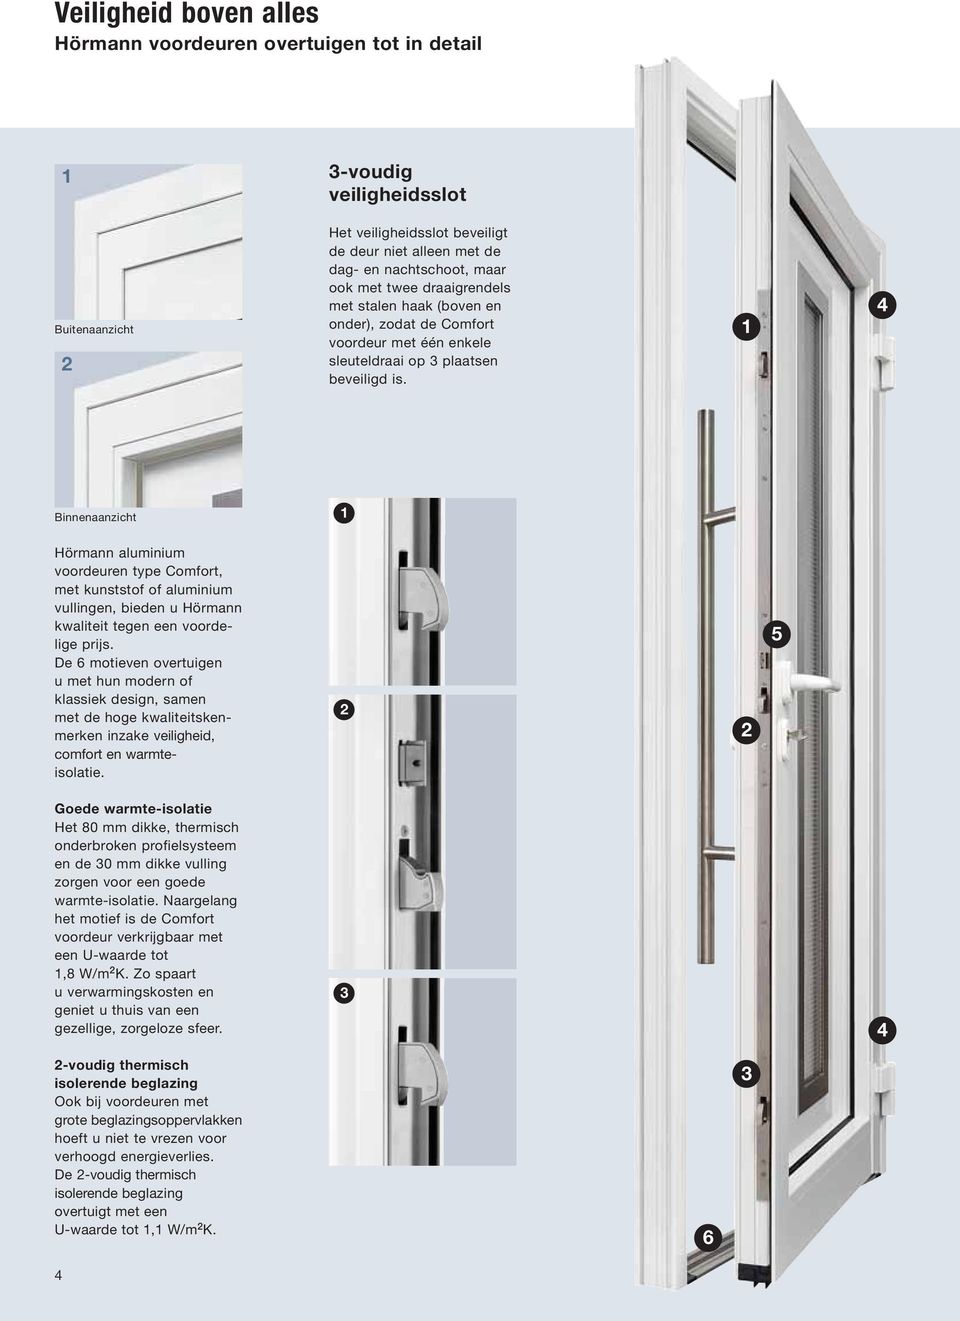 1 4 Binnenaanzicht 1 Hörmann aluminium voordeuren type Comfort, met kunststof of aluminium vullingen, bieden u Hörmann kwaliteit tegen een voordelige prijs.